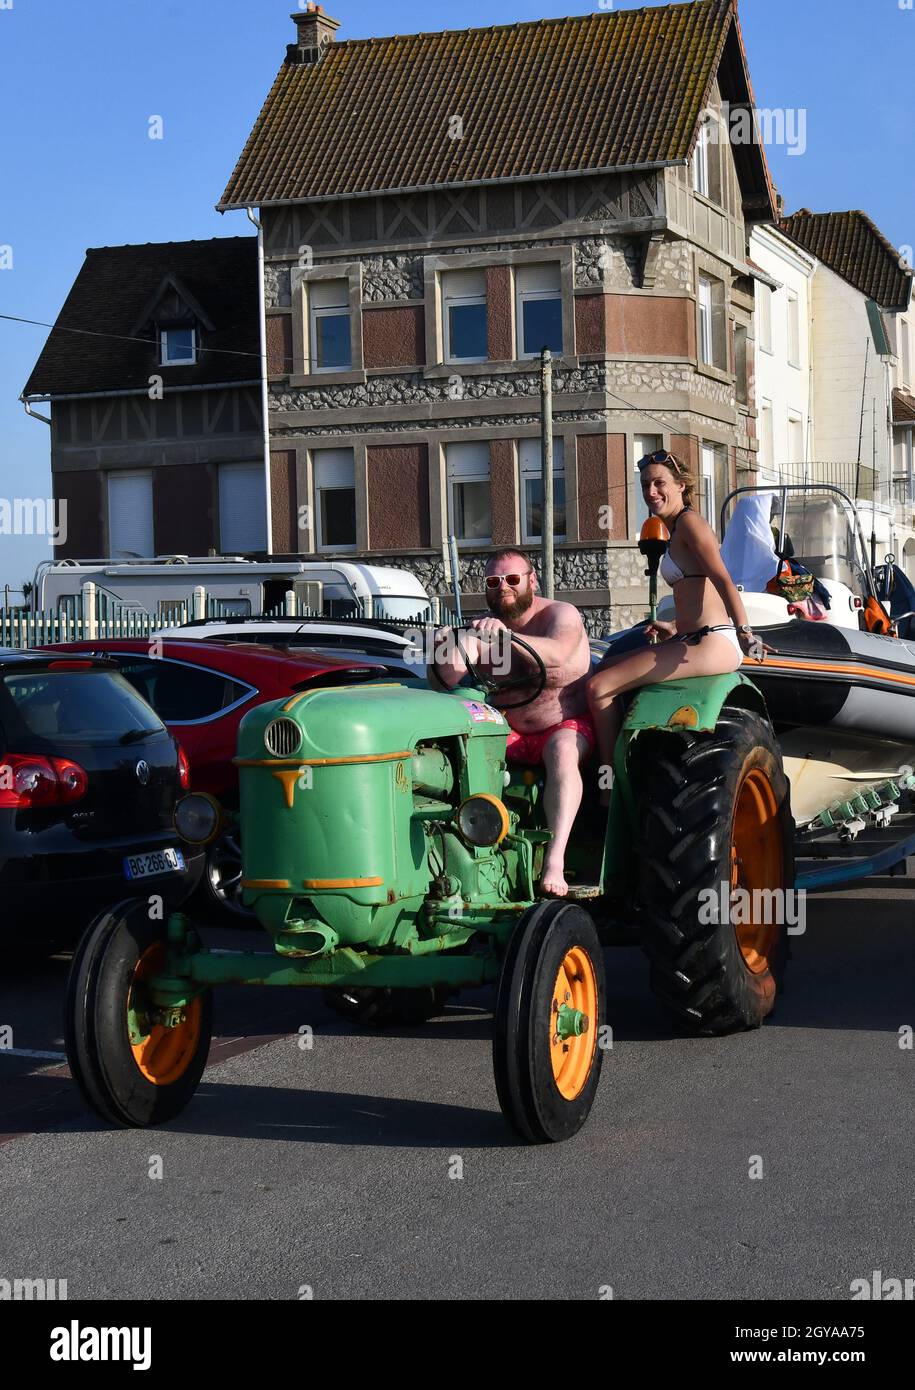 Ambleteuse su Cote d'Opale Francia settentrionale uomo e donna su trattore pescatore indossando bikini e pantaloncini Foto Stock